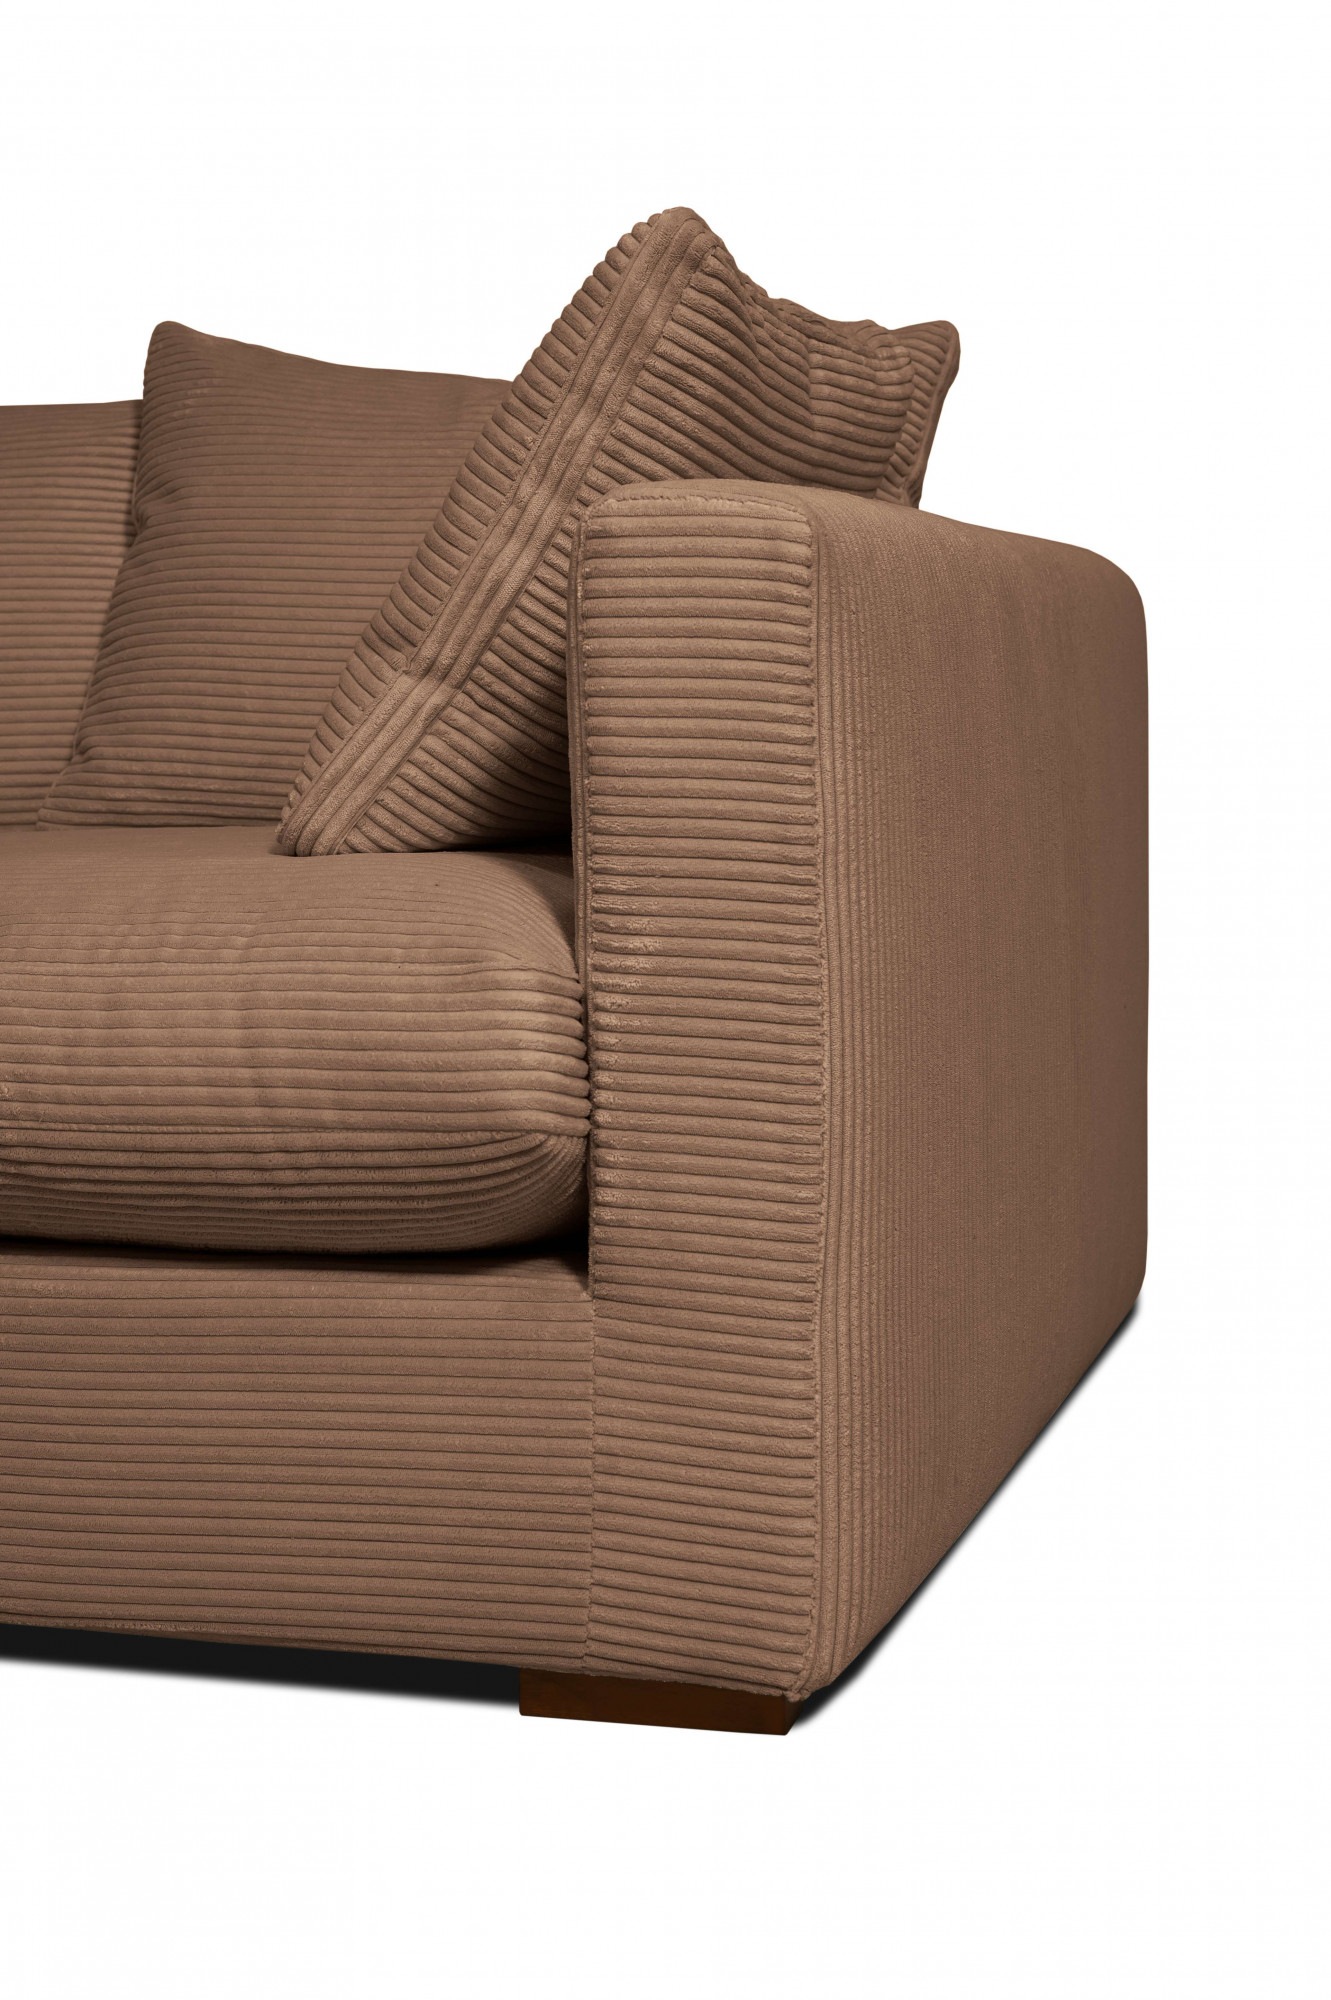 Home affaire Big-Sofa »Coray«, extra weich und kuschelig, Füllung mit Federn und Daunen